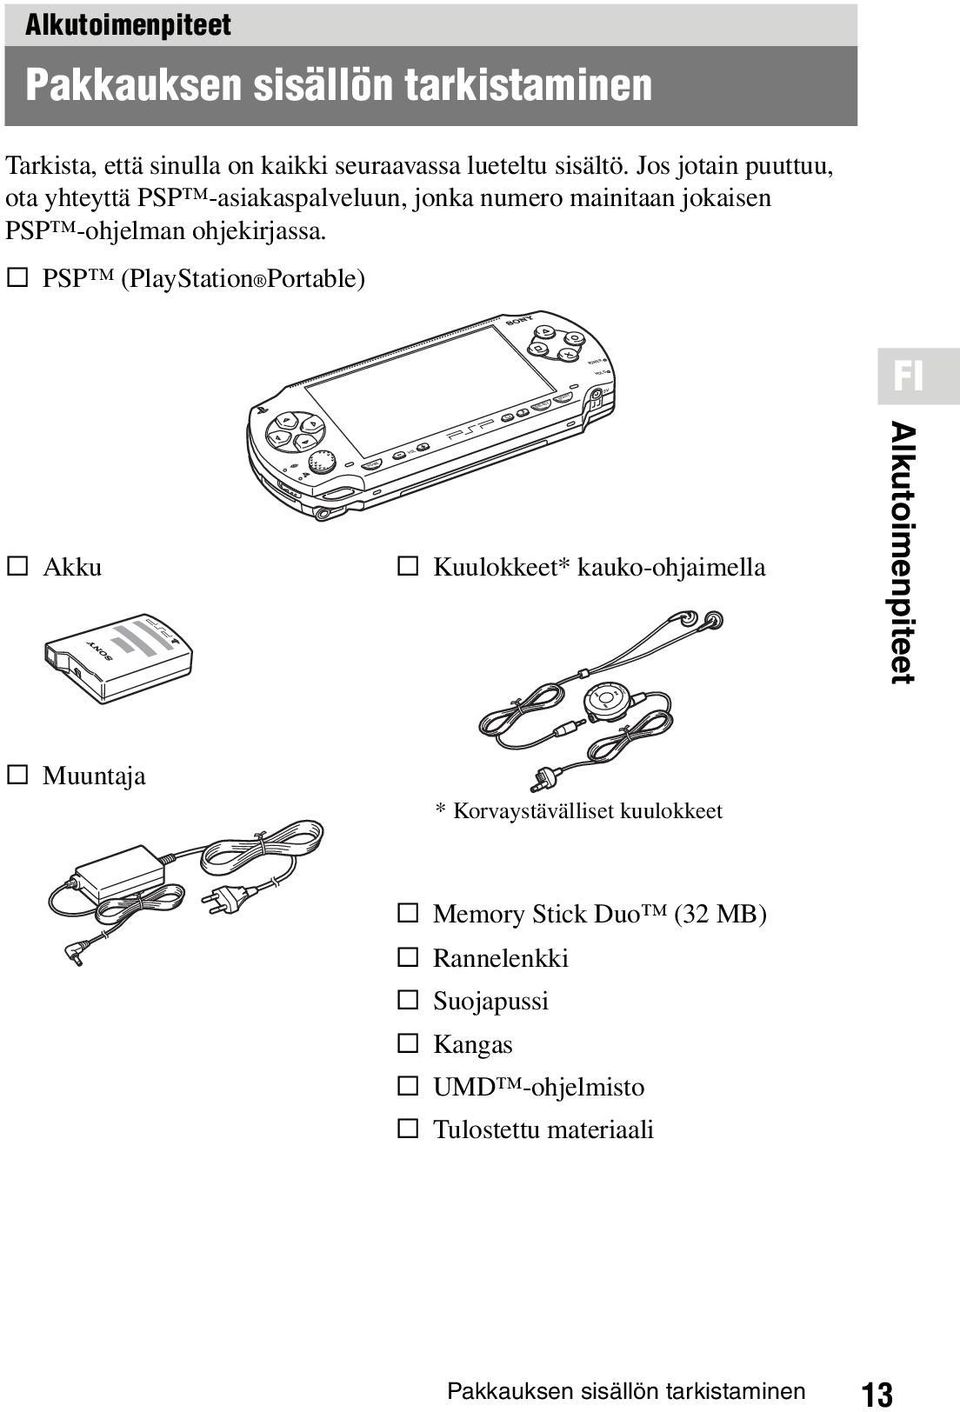 s PSP (PlayStation Portable) FI s Akku O HOME s Kuulokkeet* kauko-ohjaimella Alkutoimenpiteet s Muuntaja * Korvaystävälliset